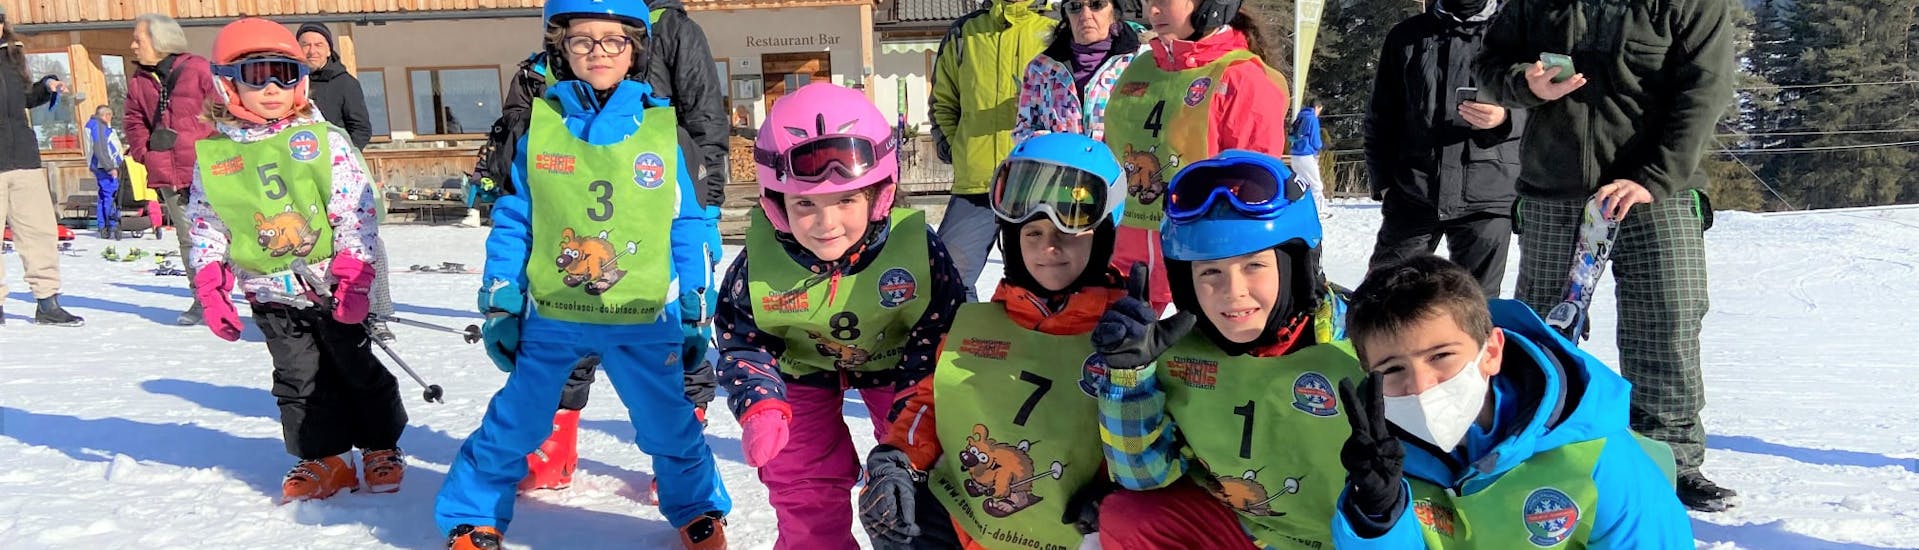 Kindergruppe an der Talstation nach dem Kinder-Skikurs für Fortgeschrittene mit der Skischule Toblach.